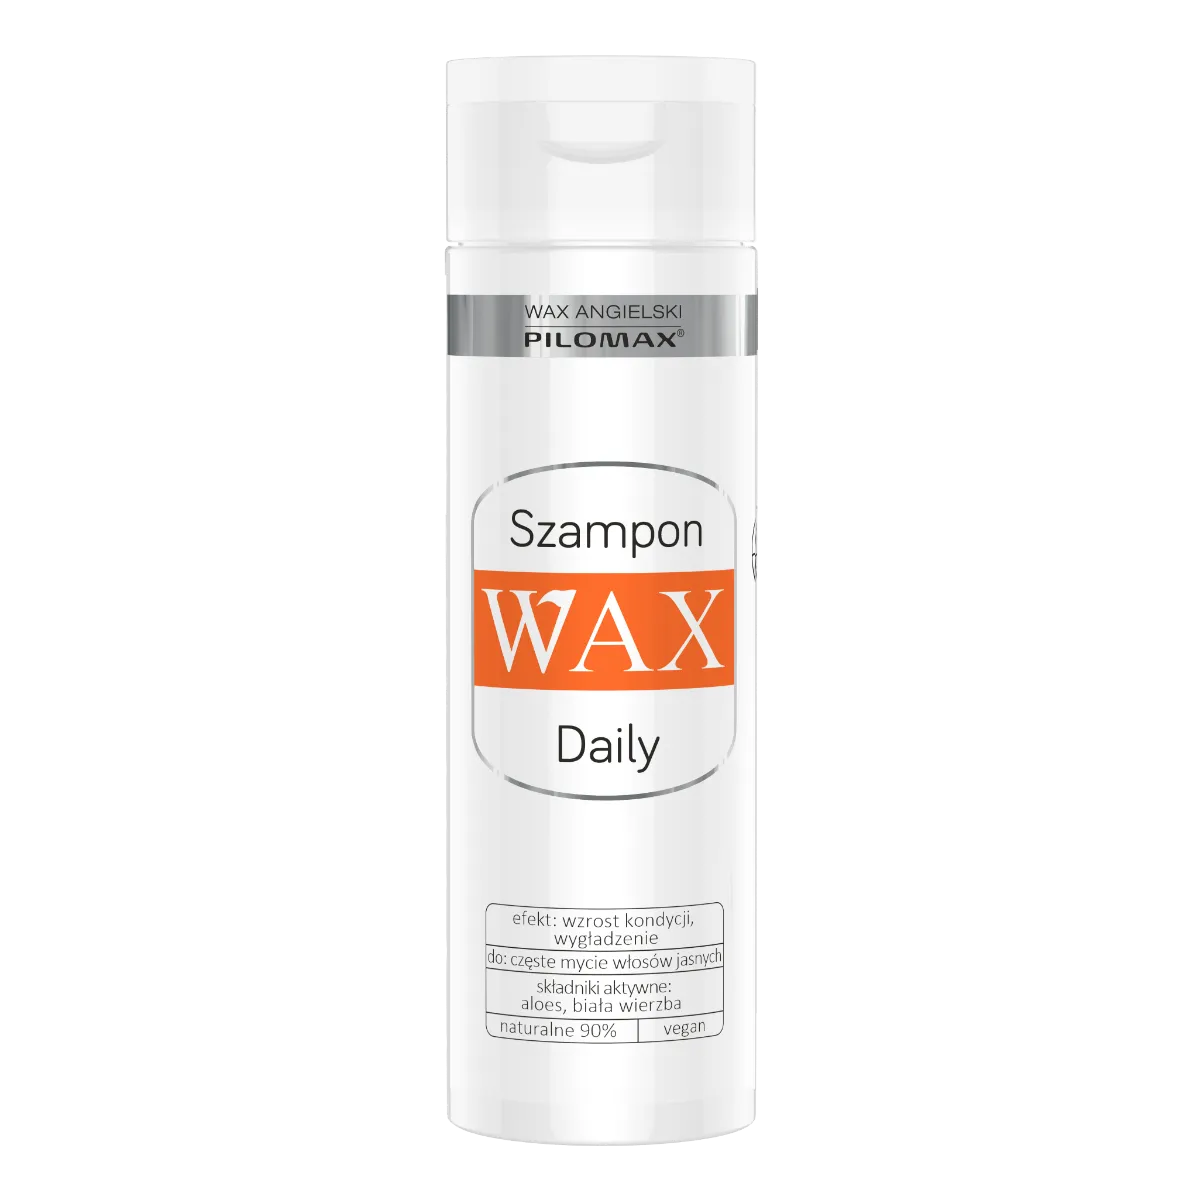 Pilomax Wax Daily Mist, szampon do włosów jasnych, 200 ml